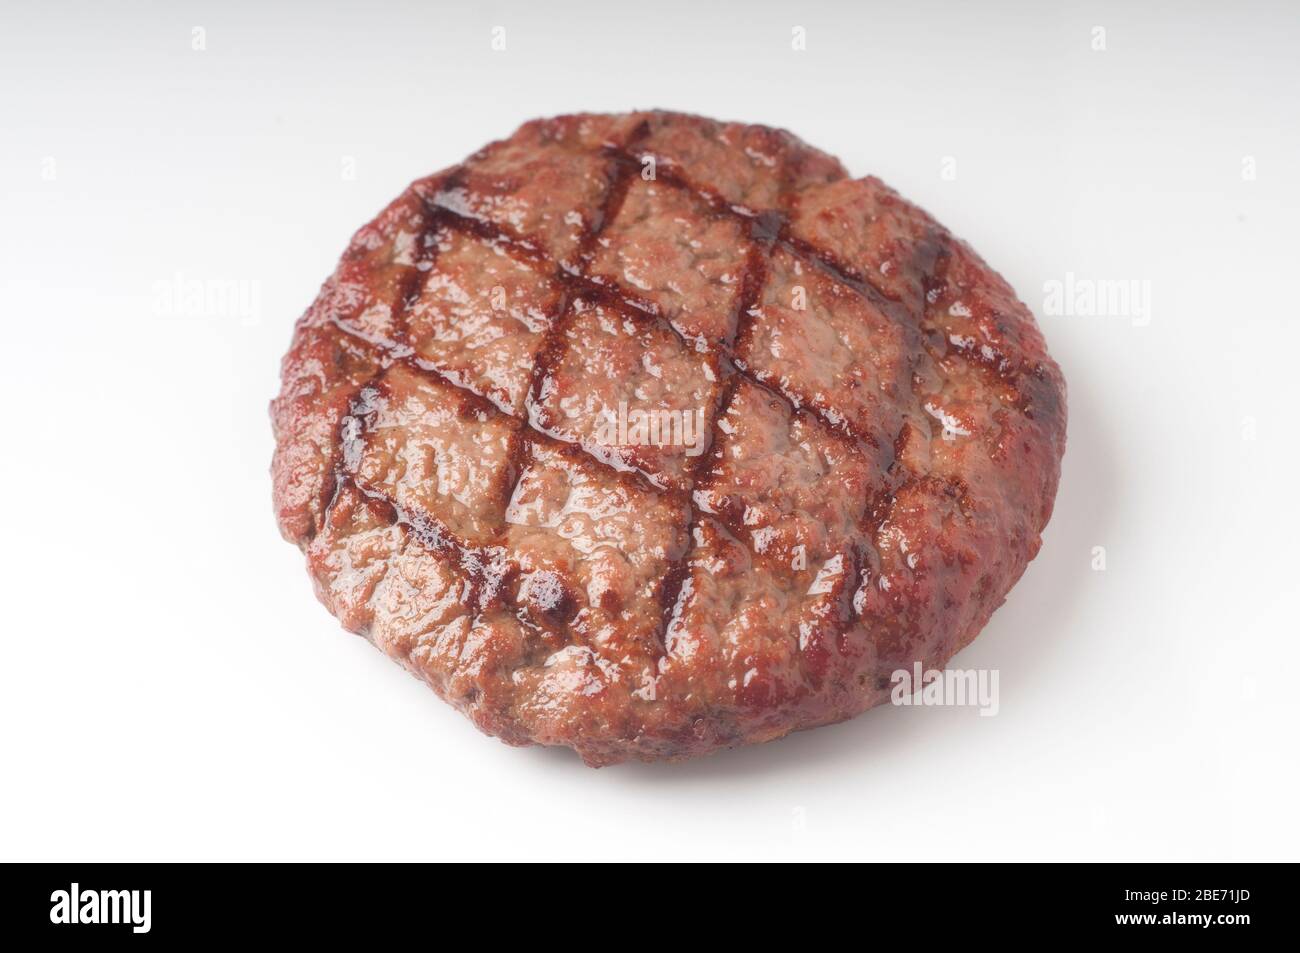 Burger de boeuf grillé savoureux sur fond blanc pour la conception graphique Banque D'Images